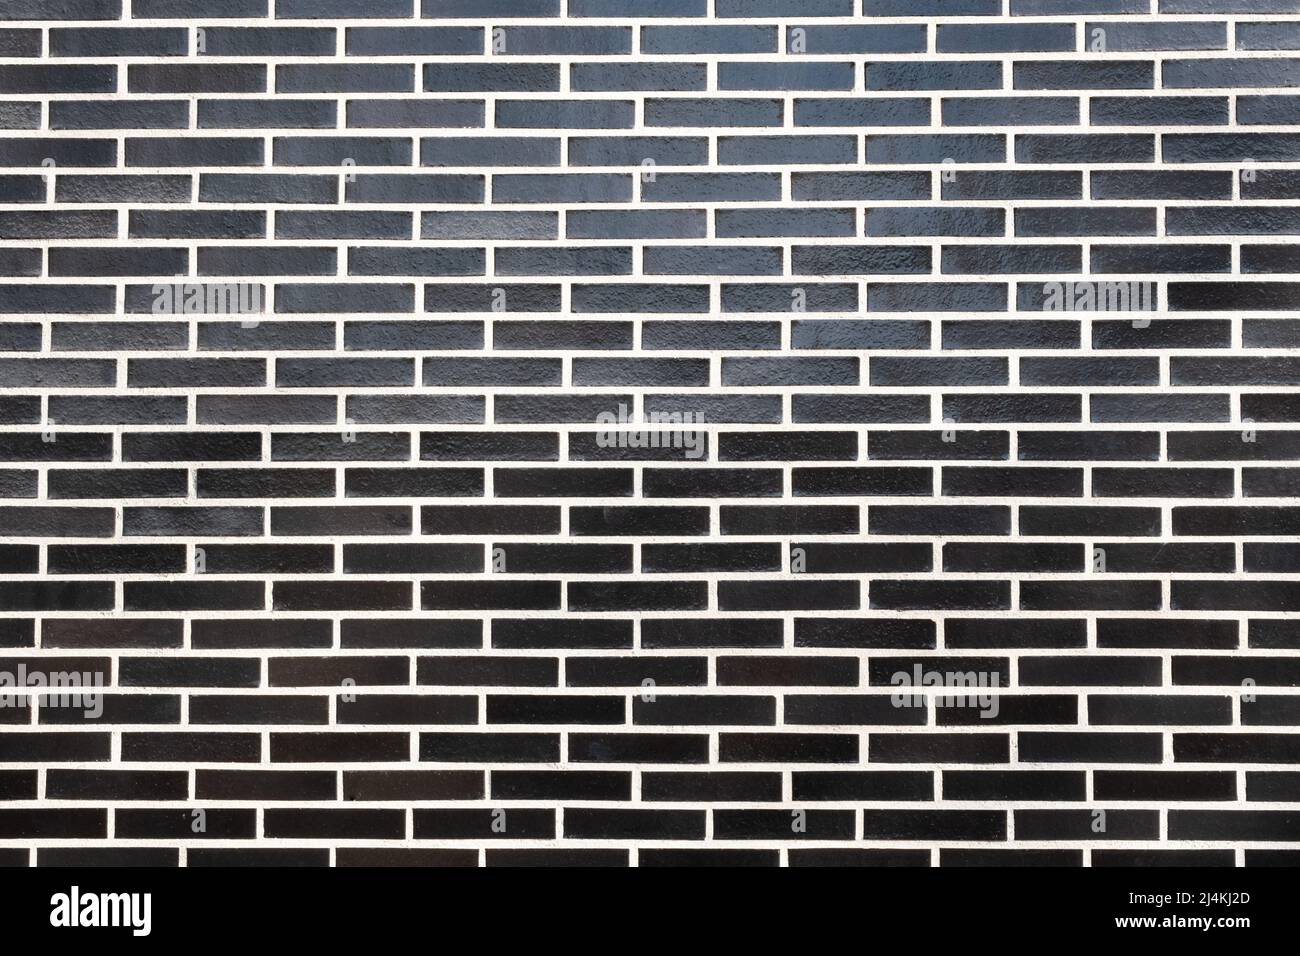 Eine schwarze Ziegelwand mit weißer Fugenstruktur, horizontale Ausrichtung. Toller nahtloser Hintergrund für verschiedene Zwecke, Platz für Text kopieren. Stockfoto